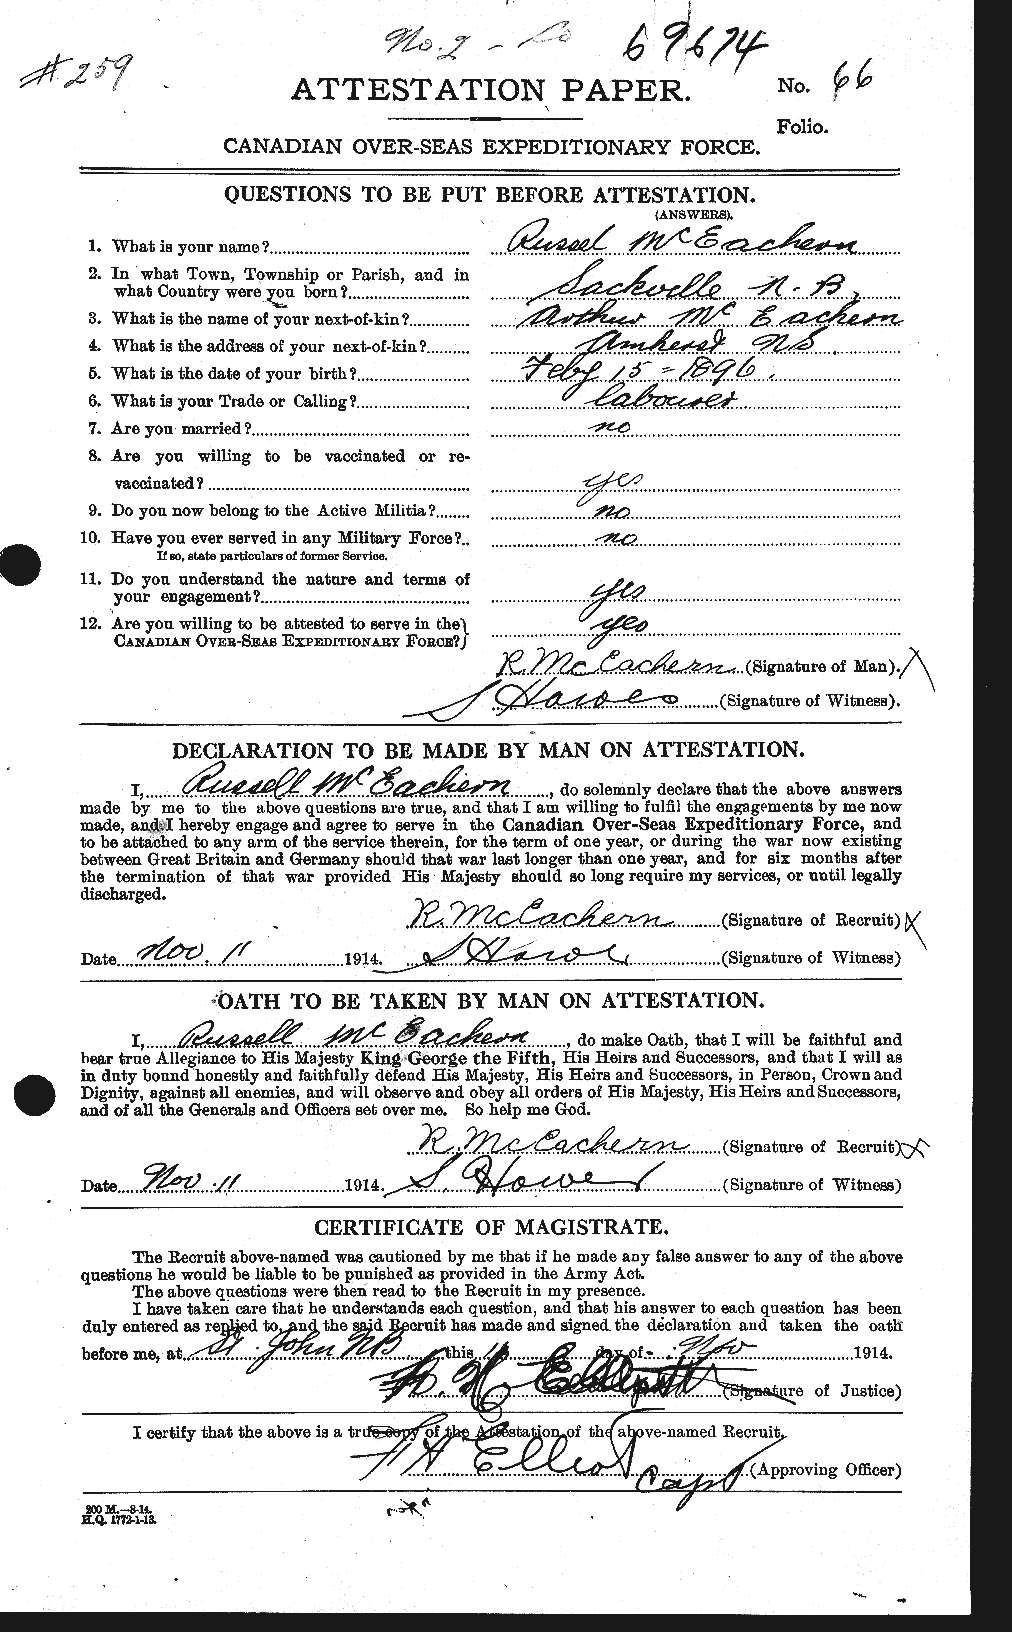 Dossiers du Personnel de la Première Guerre mondiale - CEC 521907a